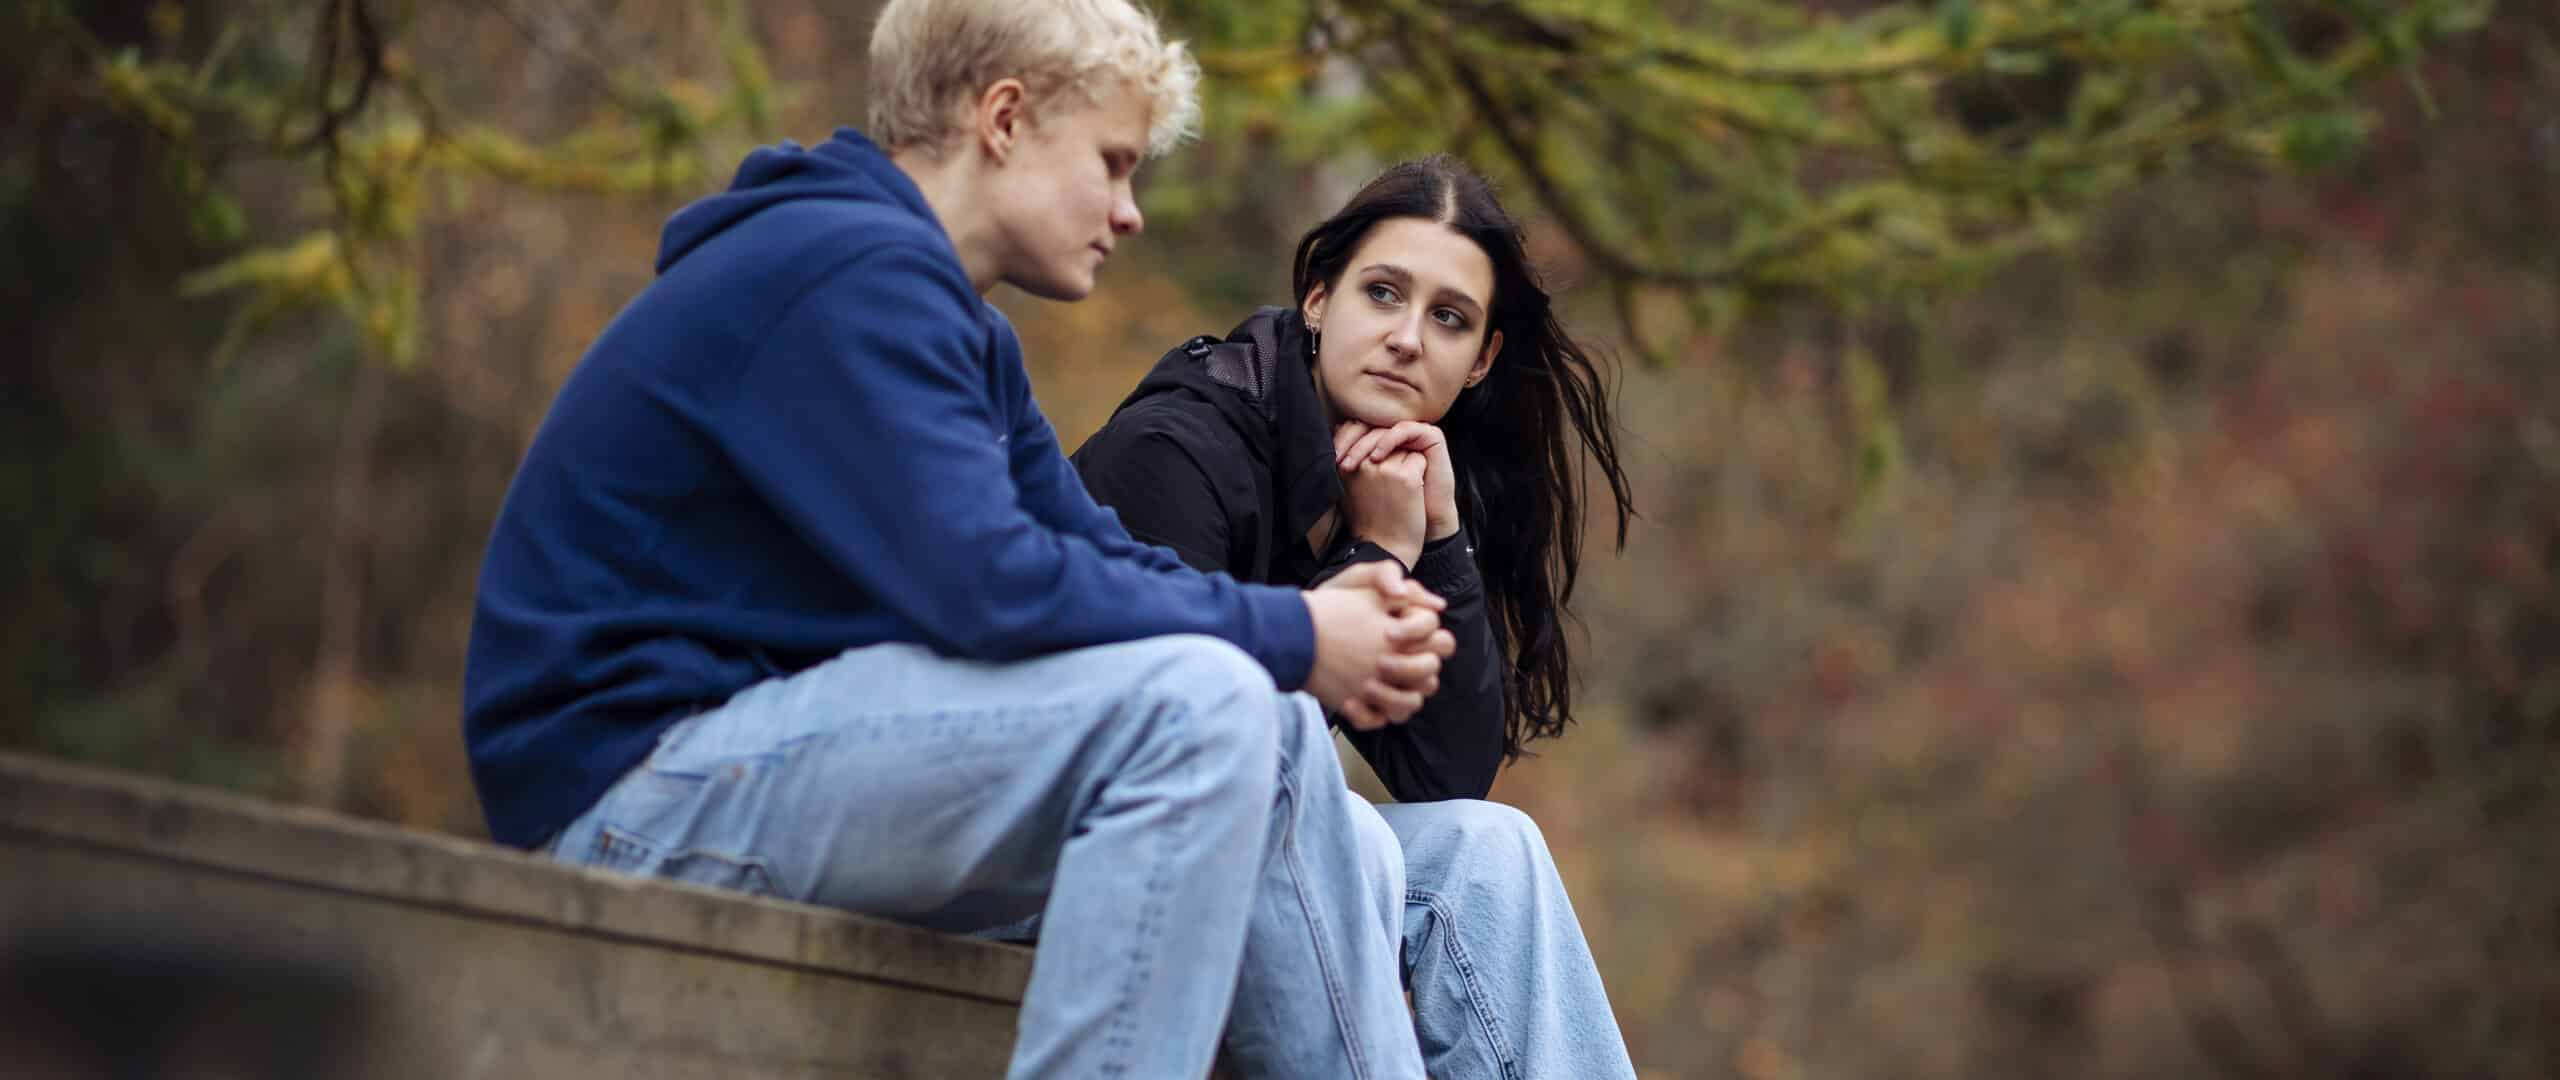 kaksi nuorta juttelee huolistaan puistossa